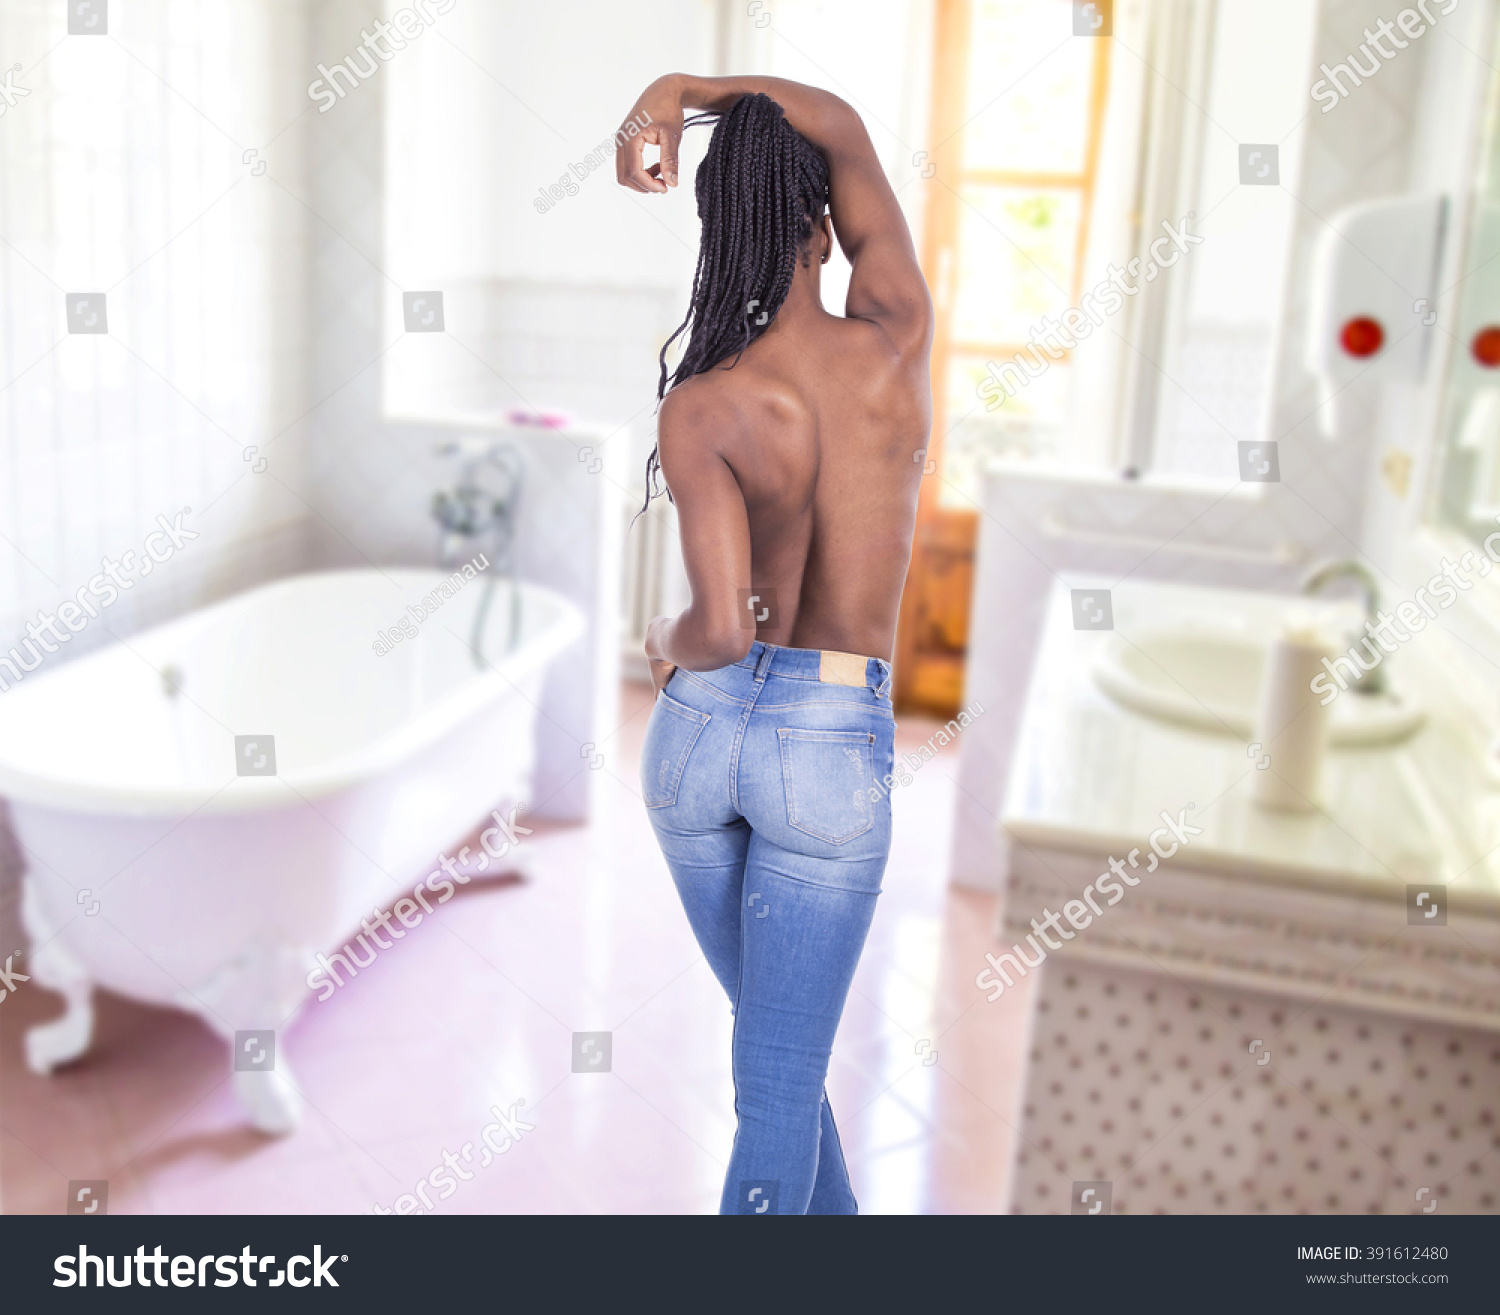 Girl Naked Sink